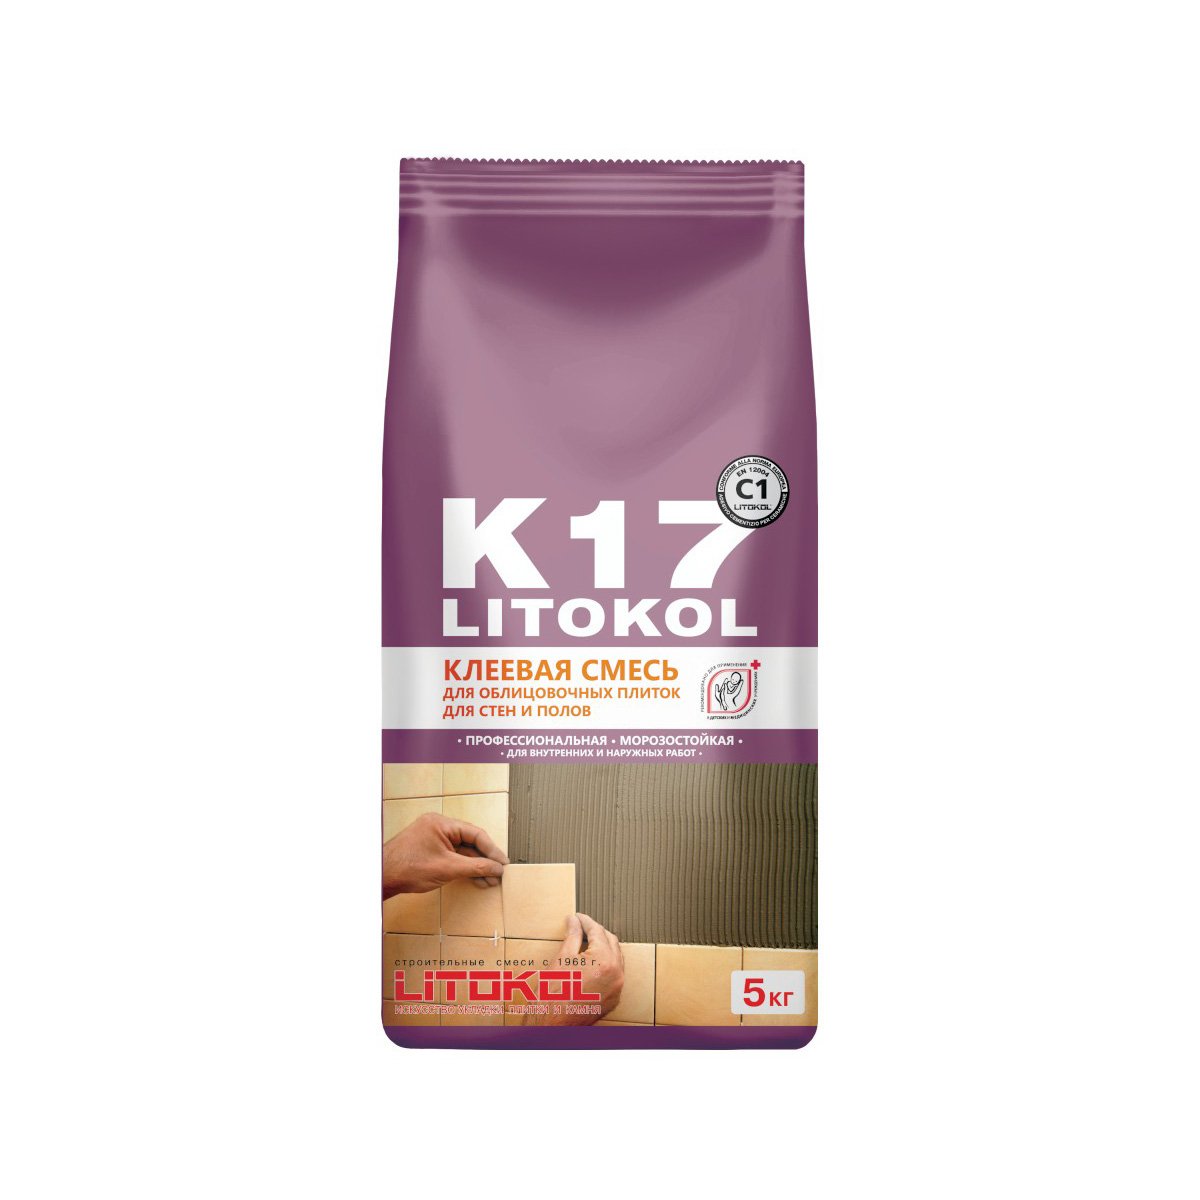 Клей для плитки и керамогранита "k17" 5 кг (1/6) litokol